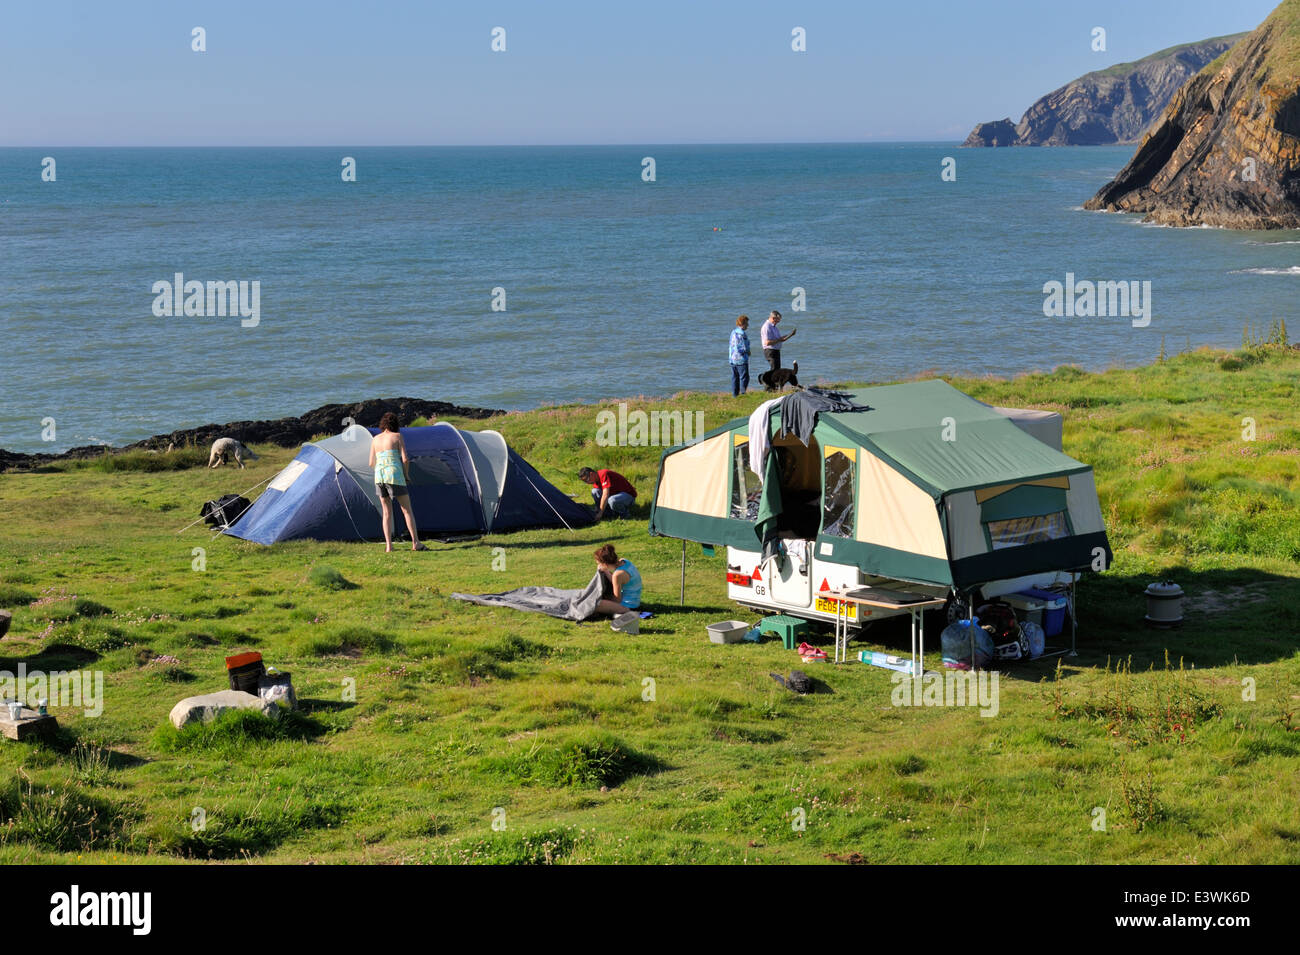 Camping le long de la côte du Pembrokeshire, Pays de Galles de l'ouest. Près de la Baie d'Ceibwr Banque D'Images